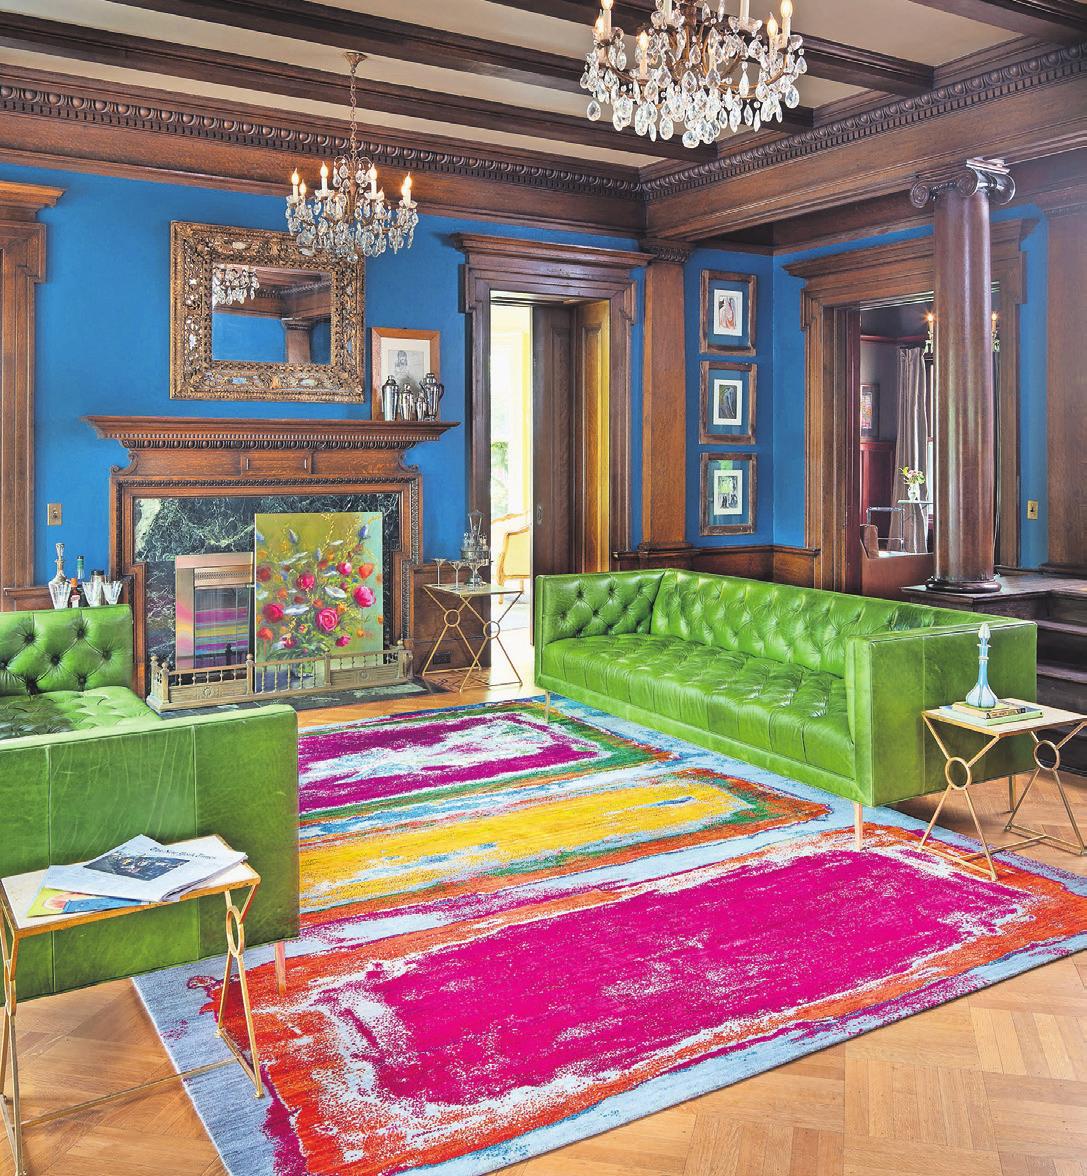 Beliebt sind aktuell Teppiche, die kräftige, kontrastreiche Farben tragen. Foto: Laurie Black/Rug Star/dpa-mag